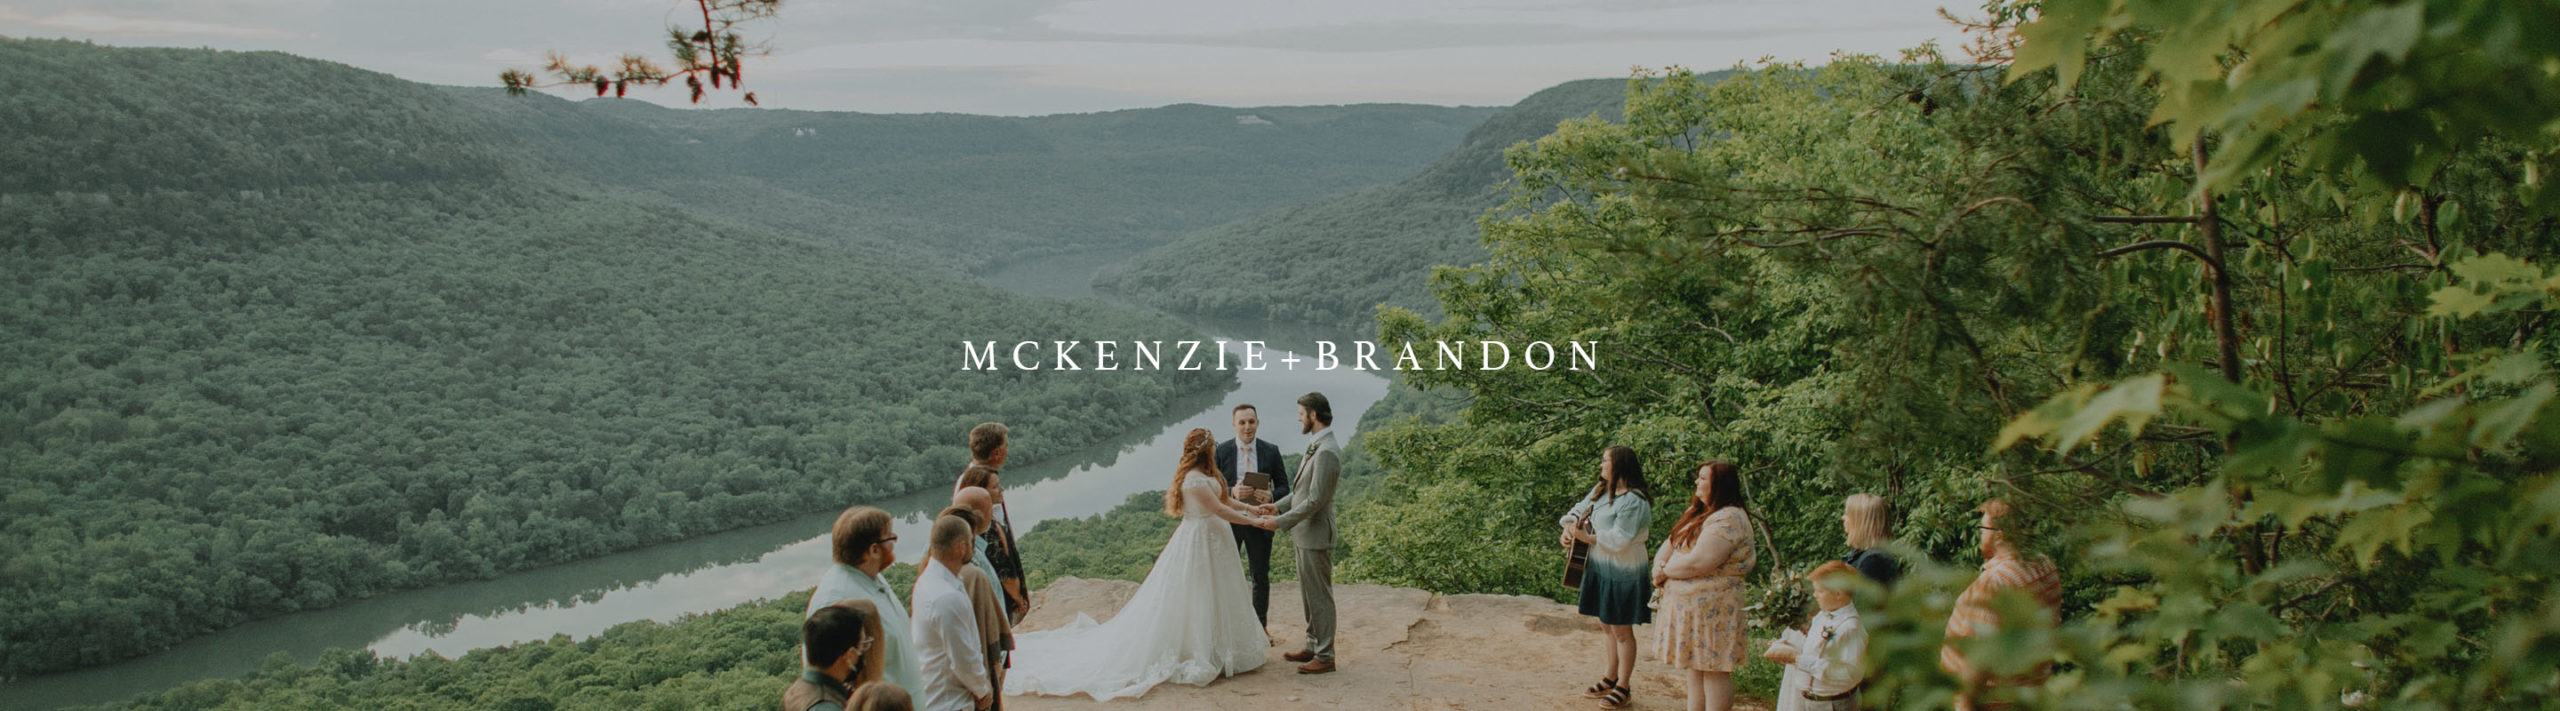 mountain micro wedding photography banner